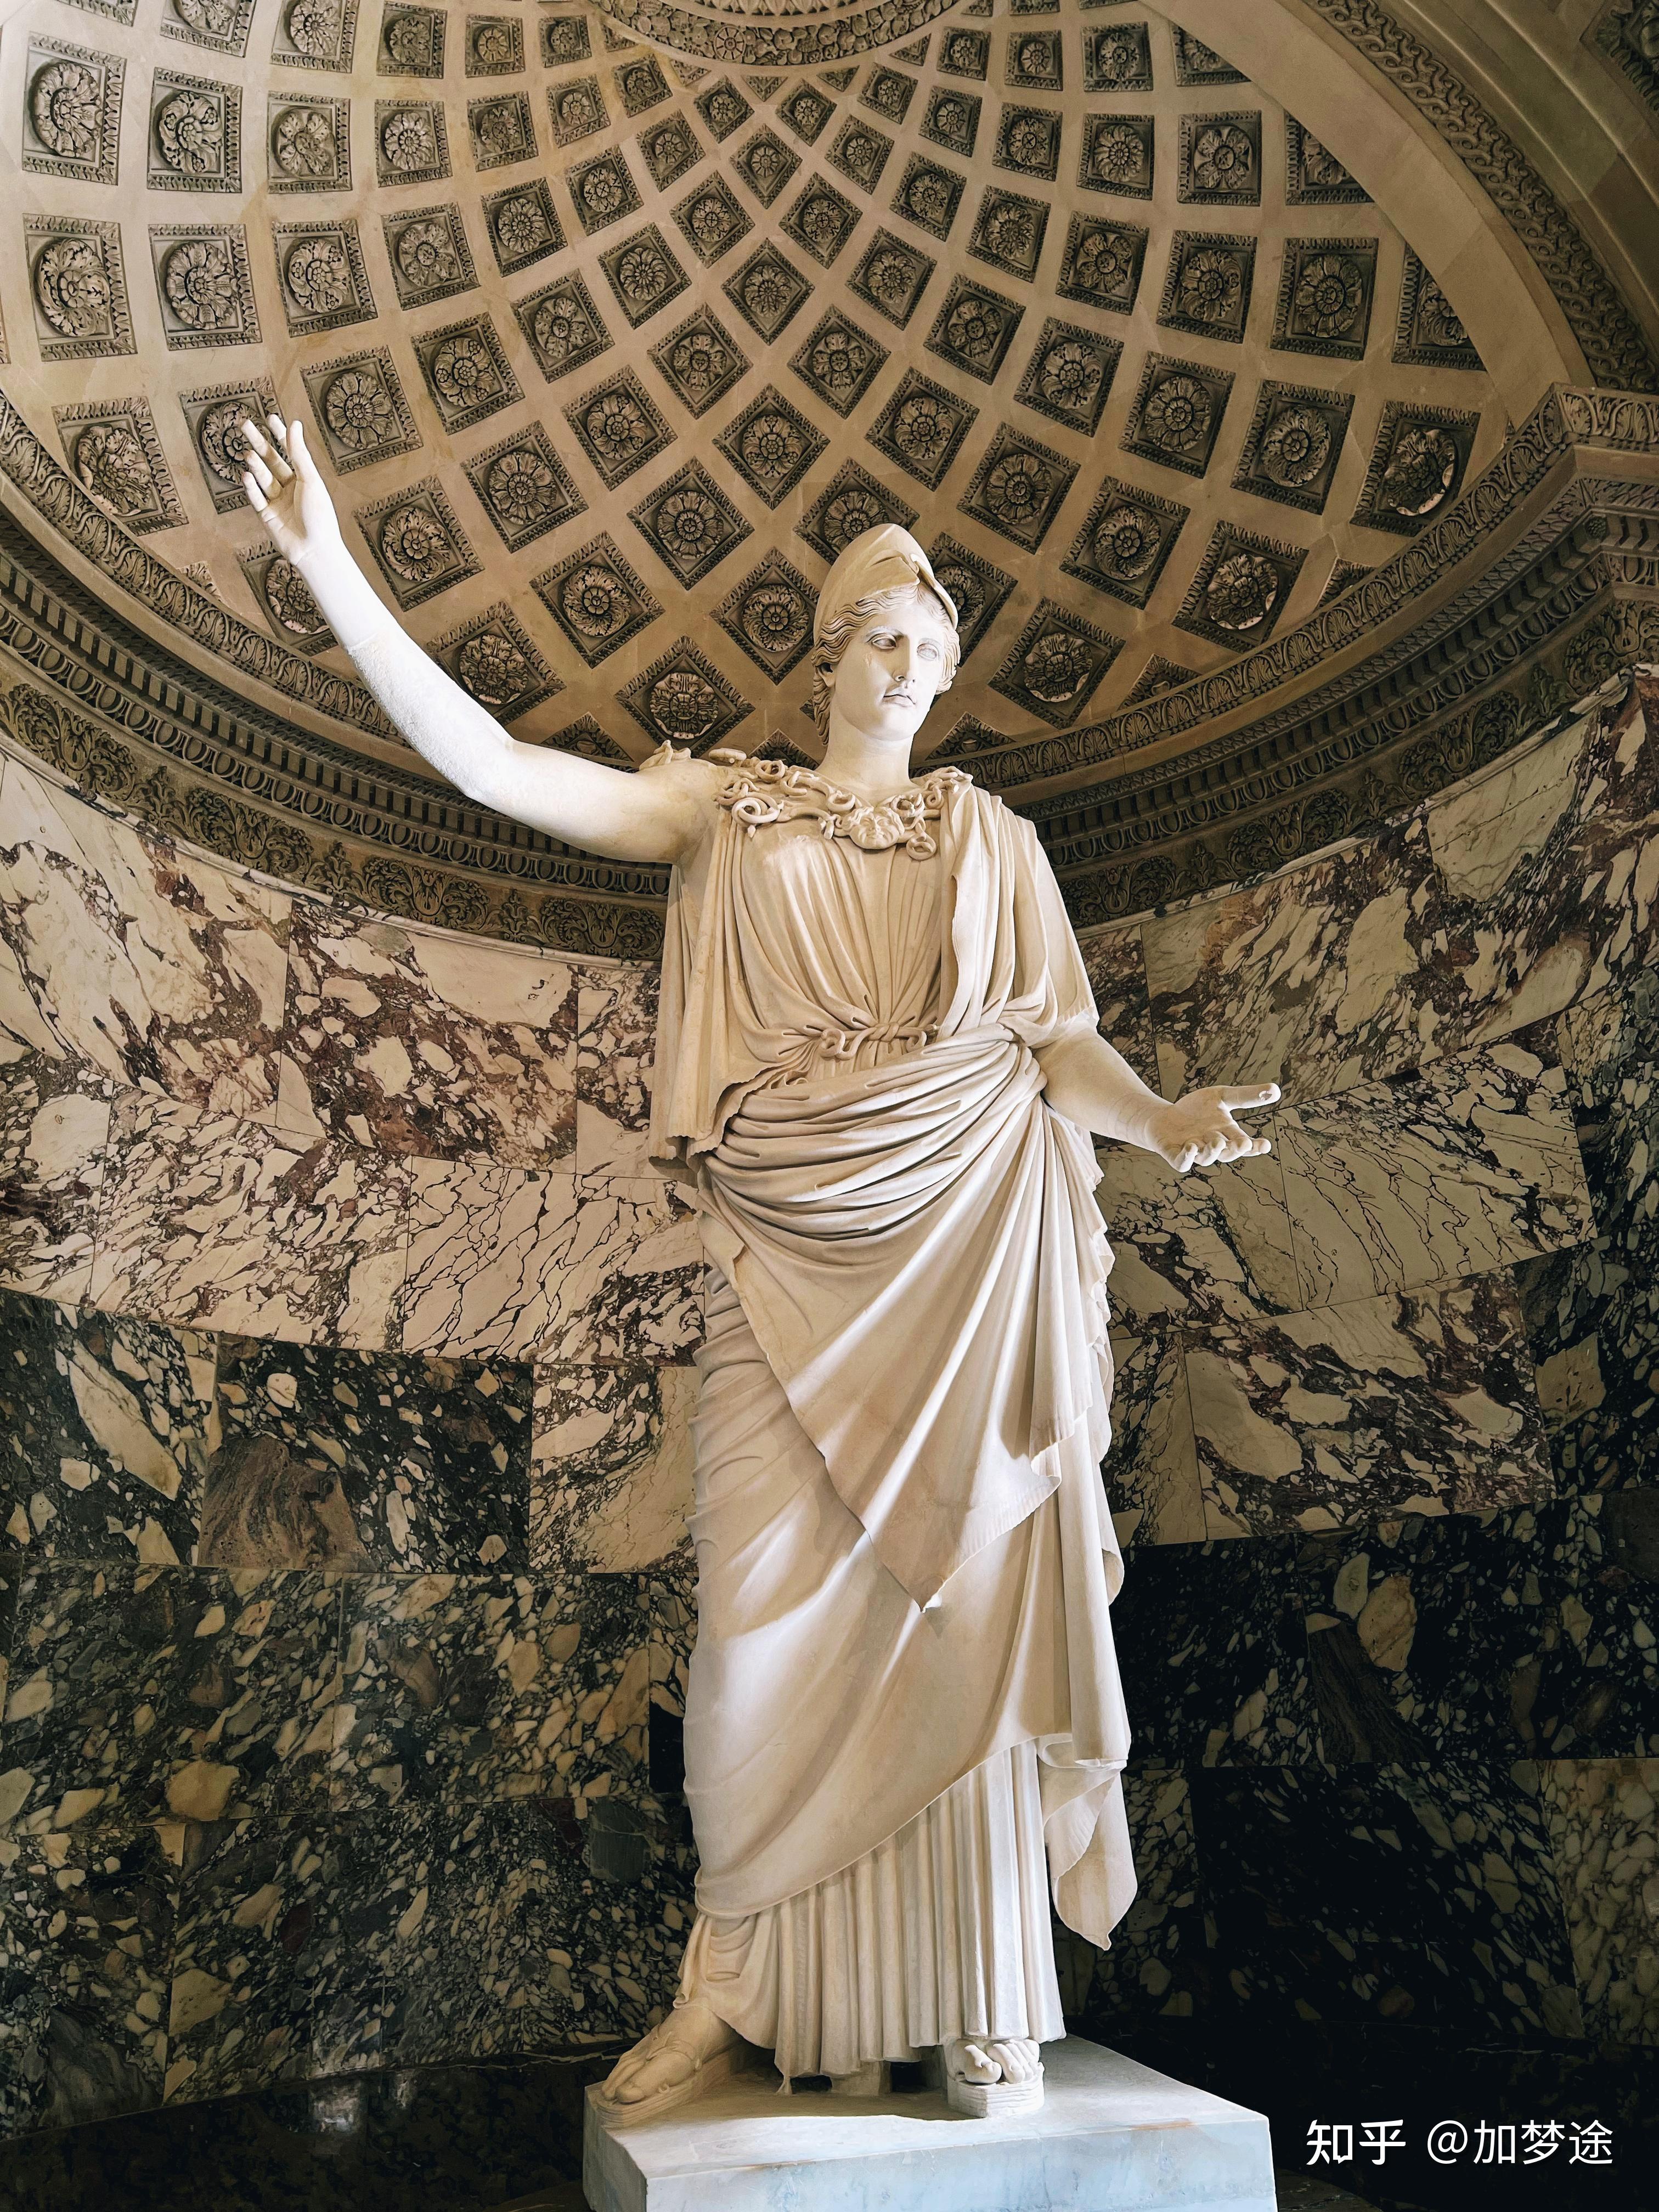 去希腊前,先了解下古希腊神话人物,谁到底是谁?